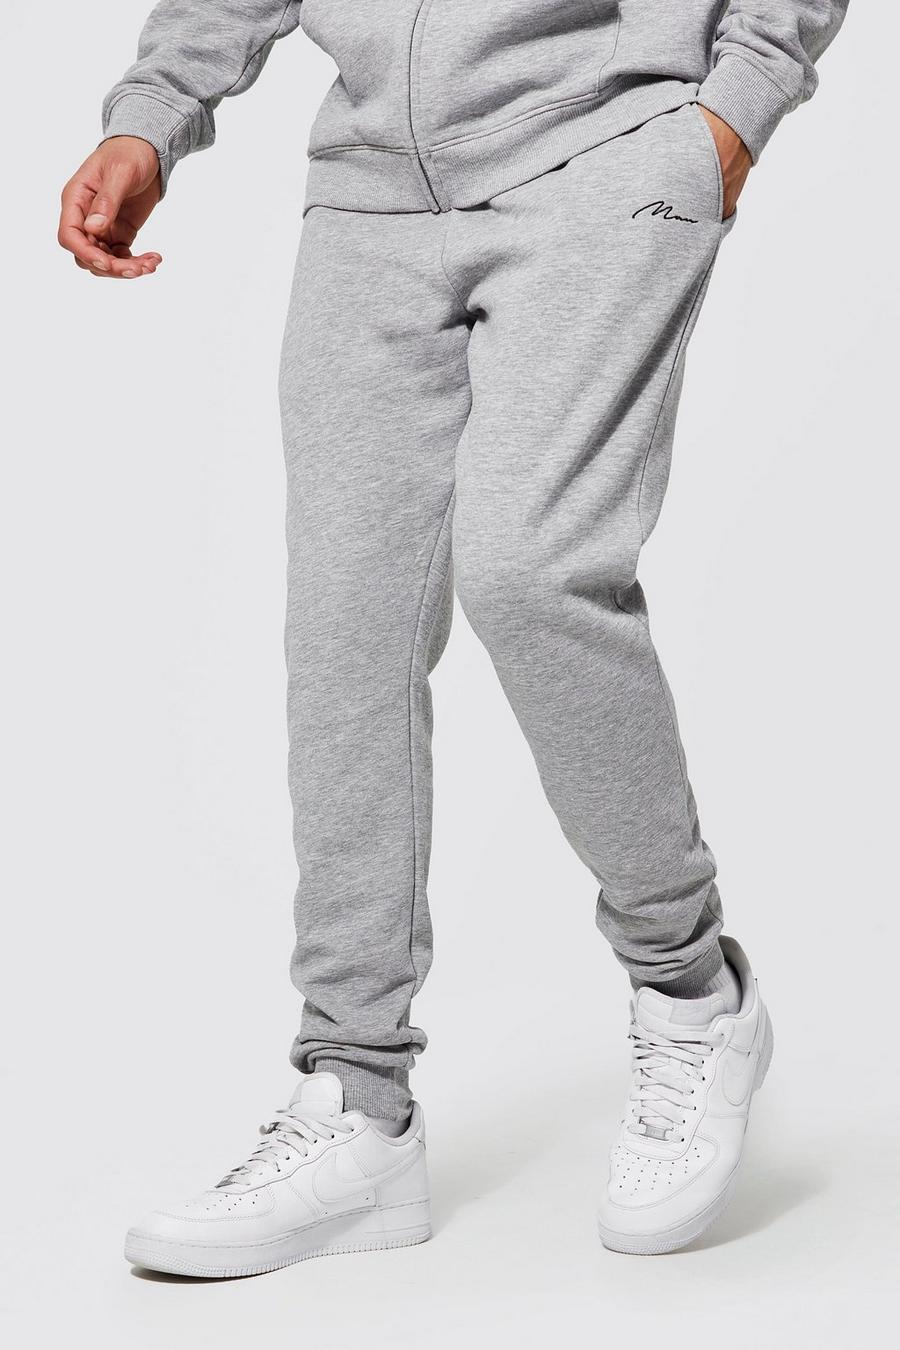 Pantalón deportivo Tall pitillo de tela jersey con algodón ecológico, Grey marl gris